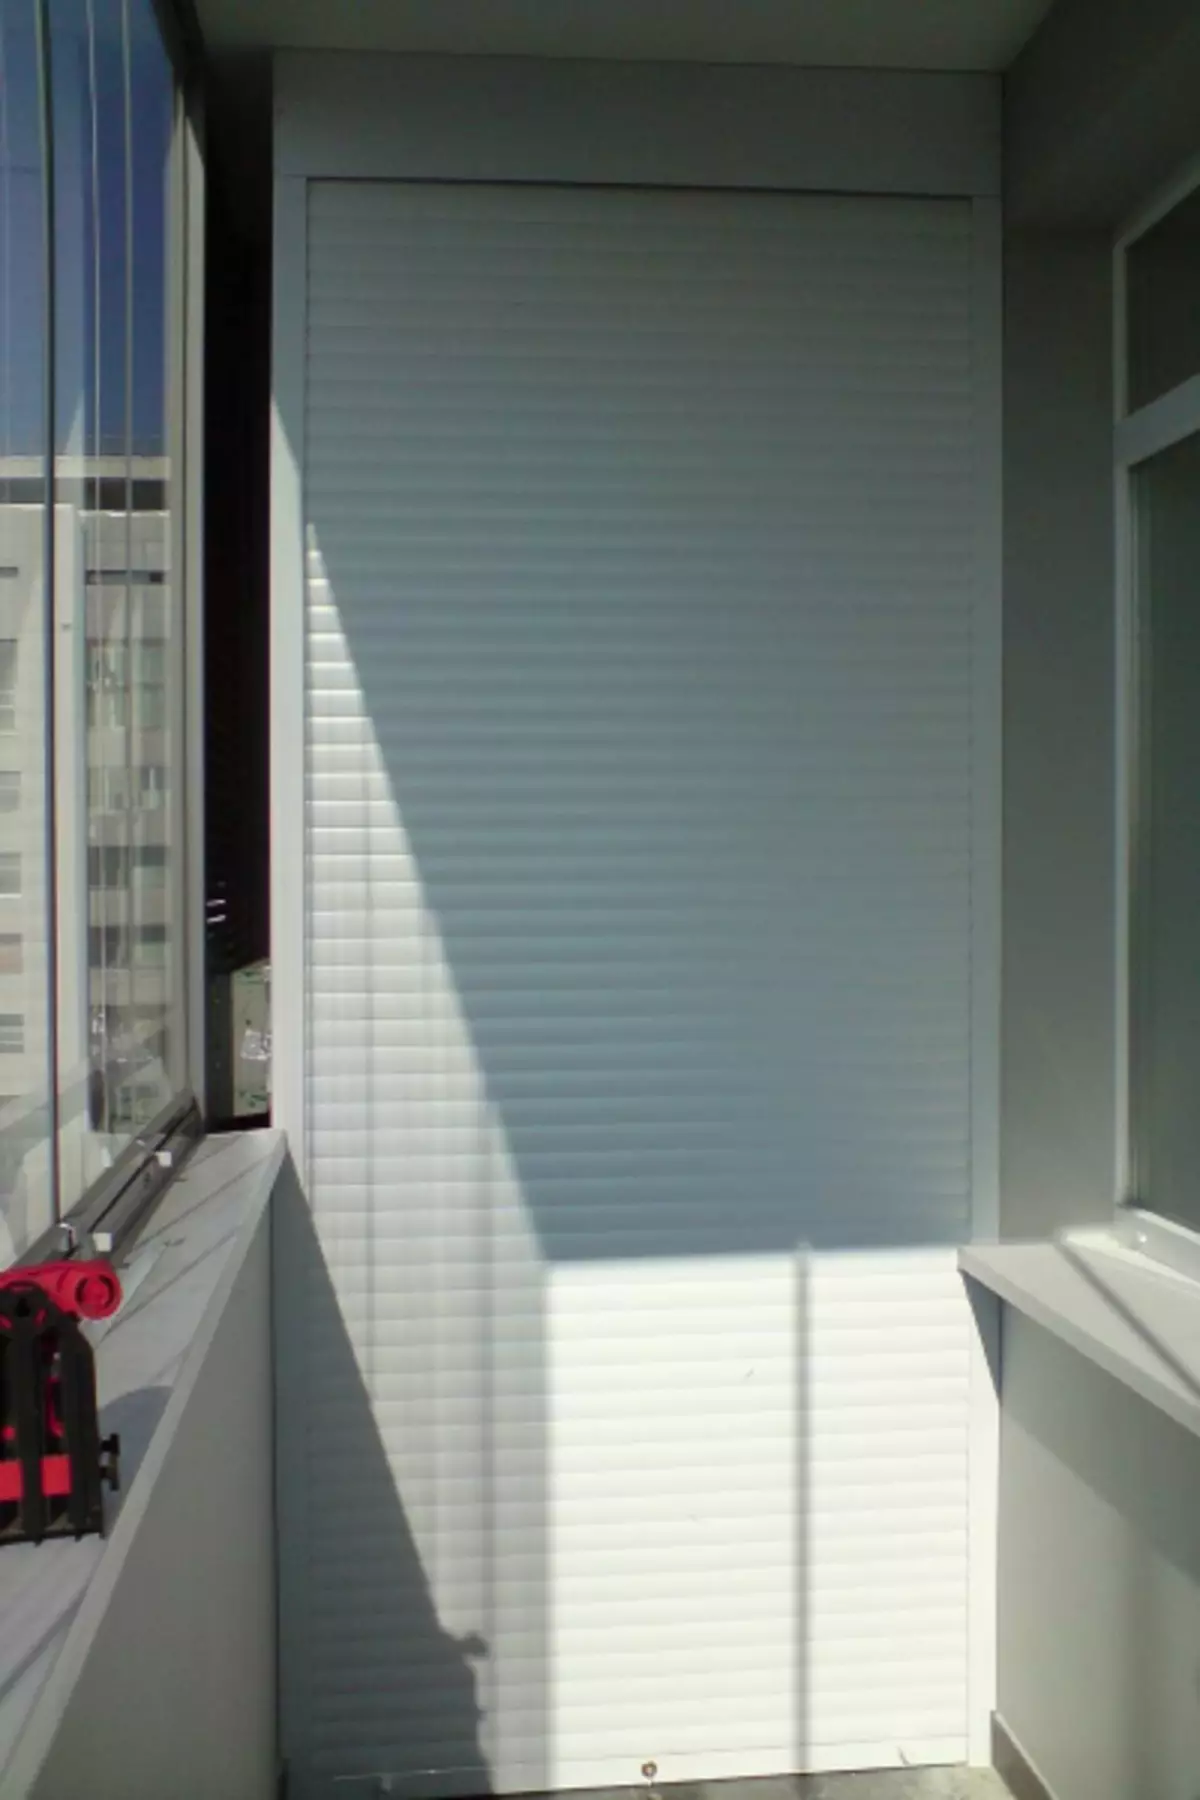 Ergonomia kabineto al la balkono kun la rolo de ŝutroj: komforto kaj kompakteco